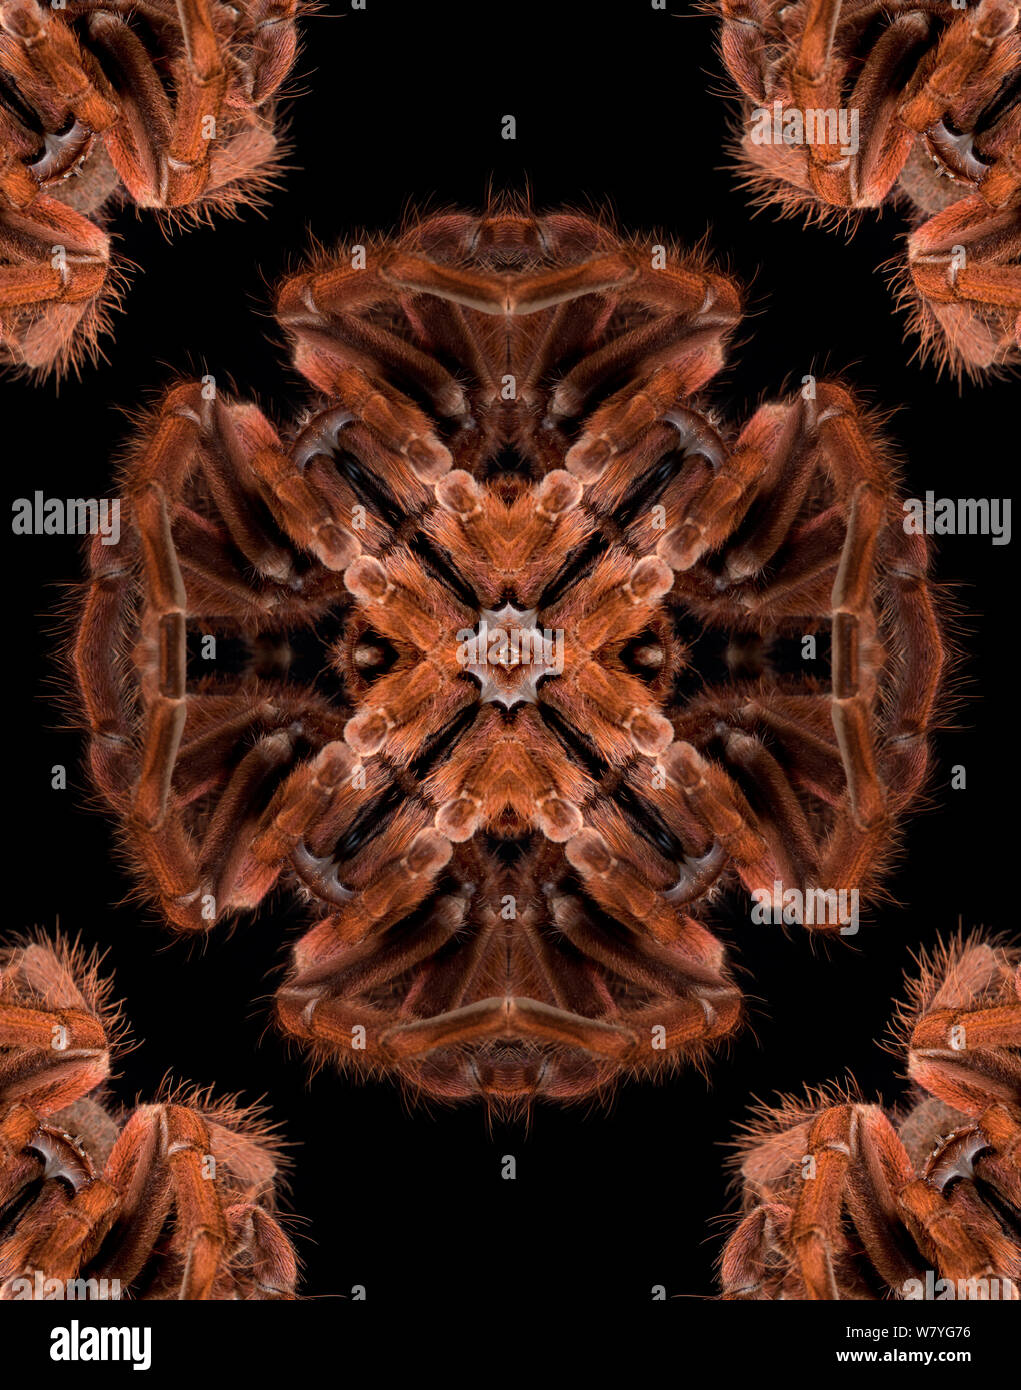 Motif kaléidoscope formé à partir de photo du Brésilien Pinkbloom (Pamphobeteus platyomma tarentule). 1499518 pour voir l'original. NAT GEO POUR SOUS EMBARGO JUSQU'À la fin de 2015 Banque D'Images